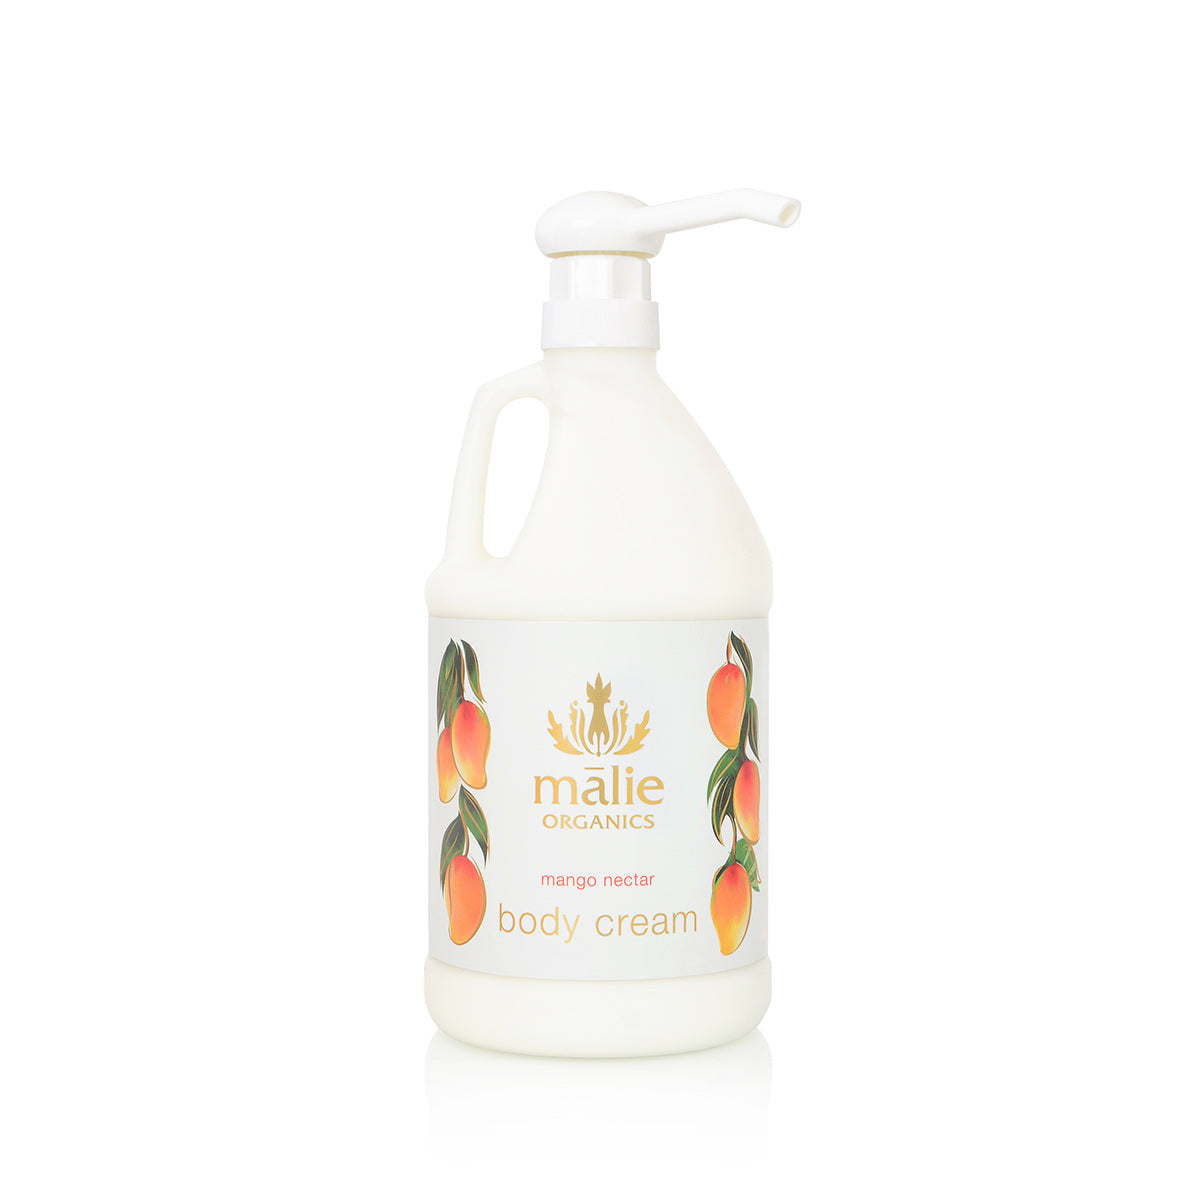 mango nectar body cream 1/2 gallon - Eco-Refill